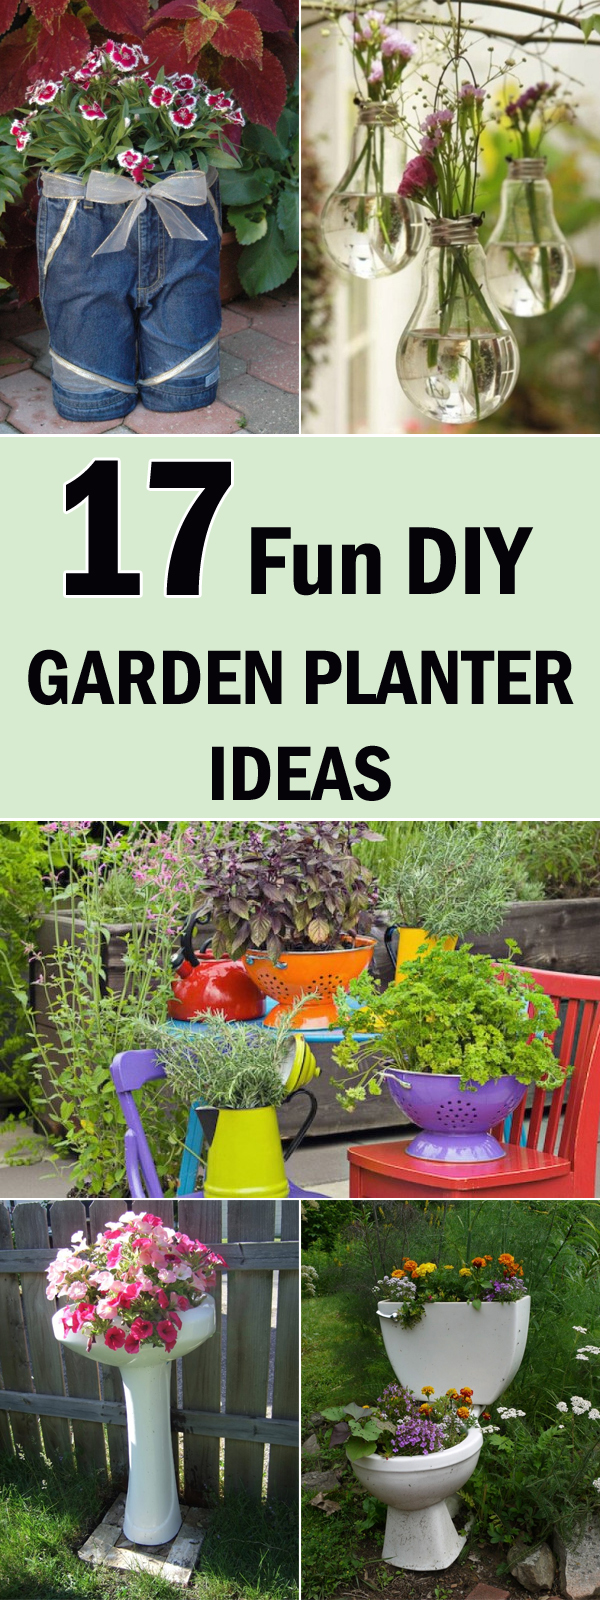 Fun Garden Ideas